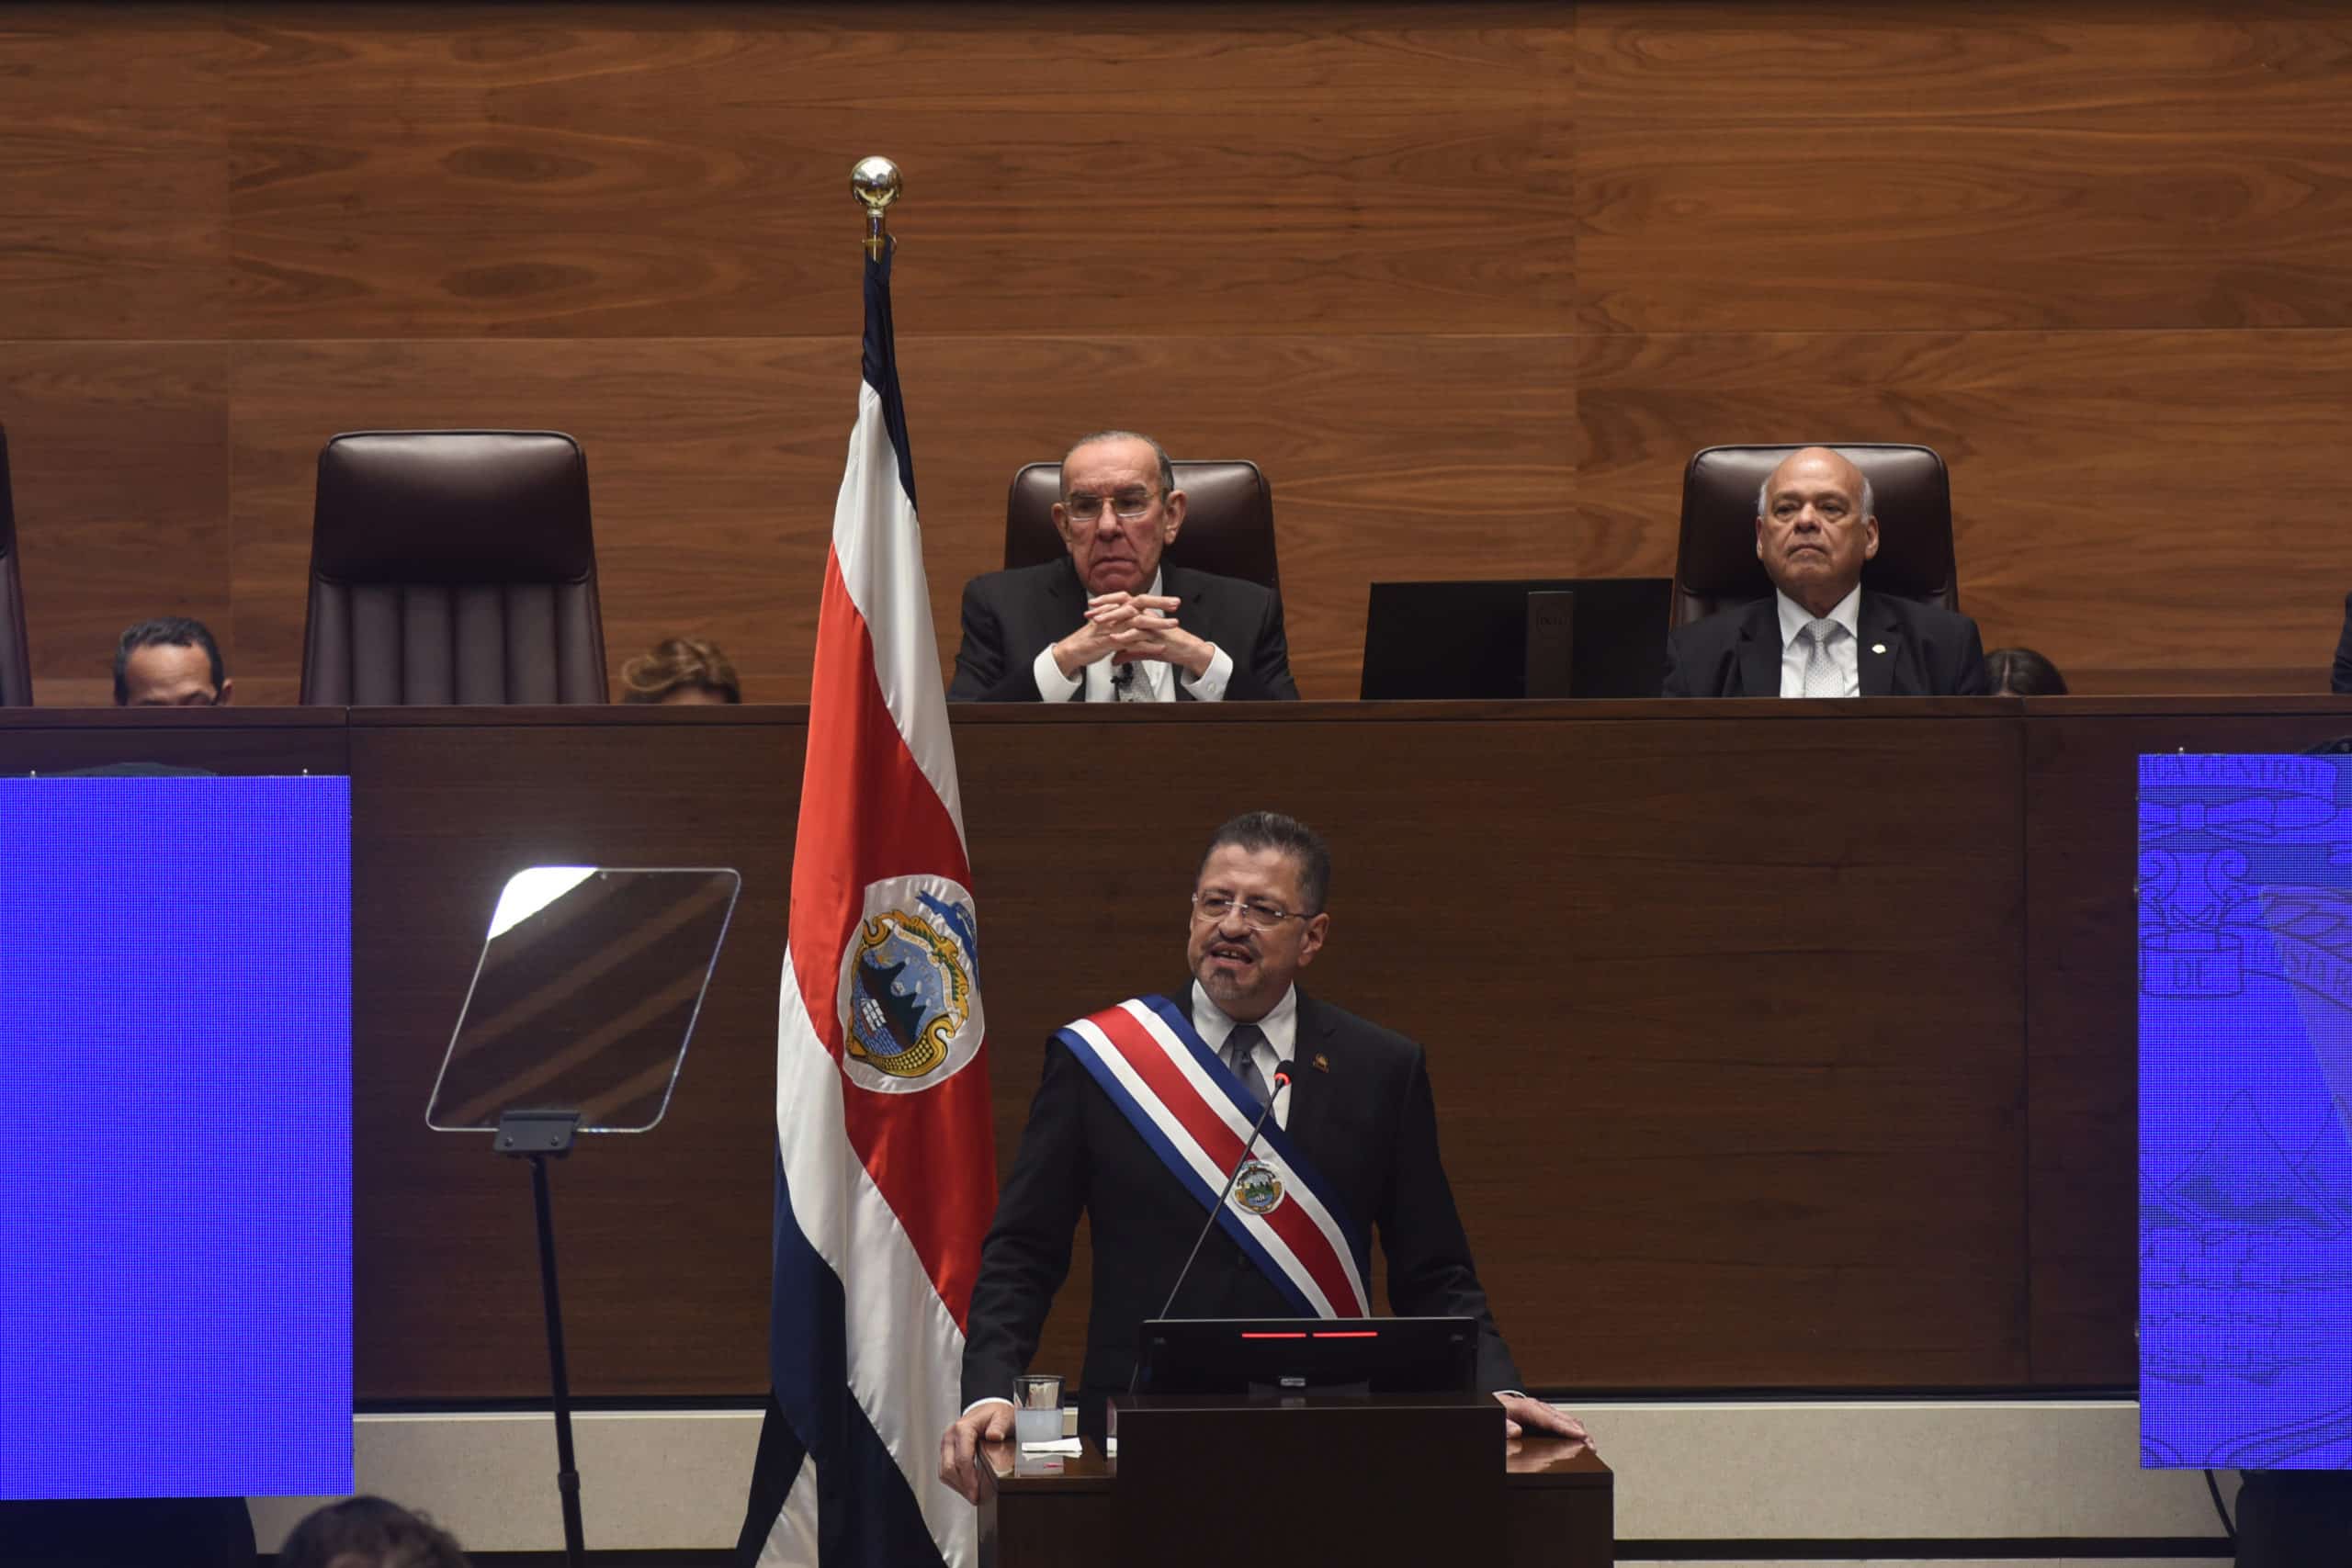 Estado de la Nación advierte de choque entre poderes, poca cooperación y entrabamiento político en Costa Rica